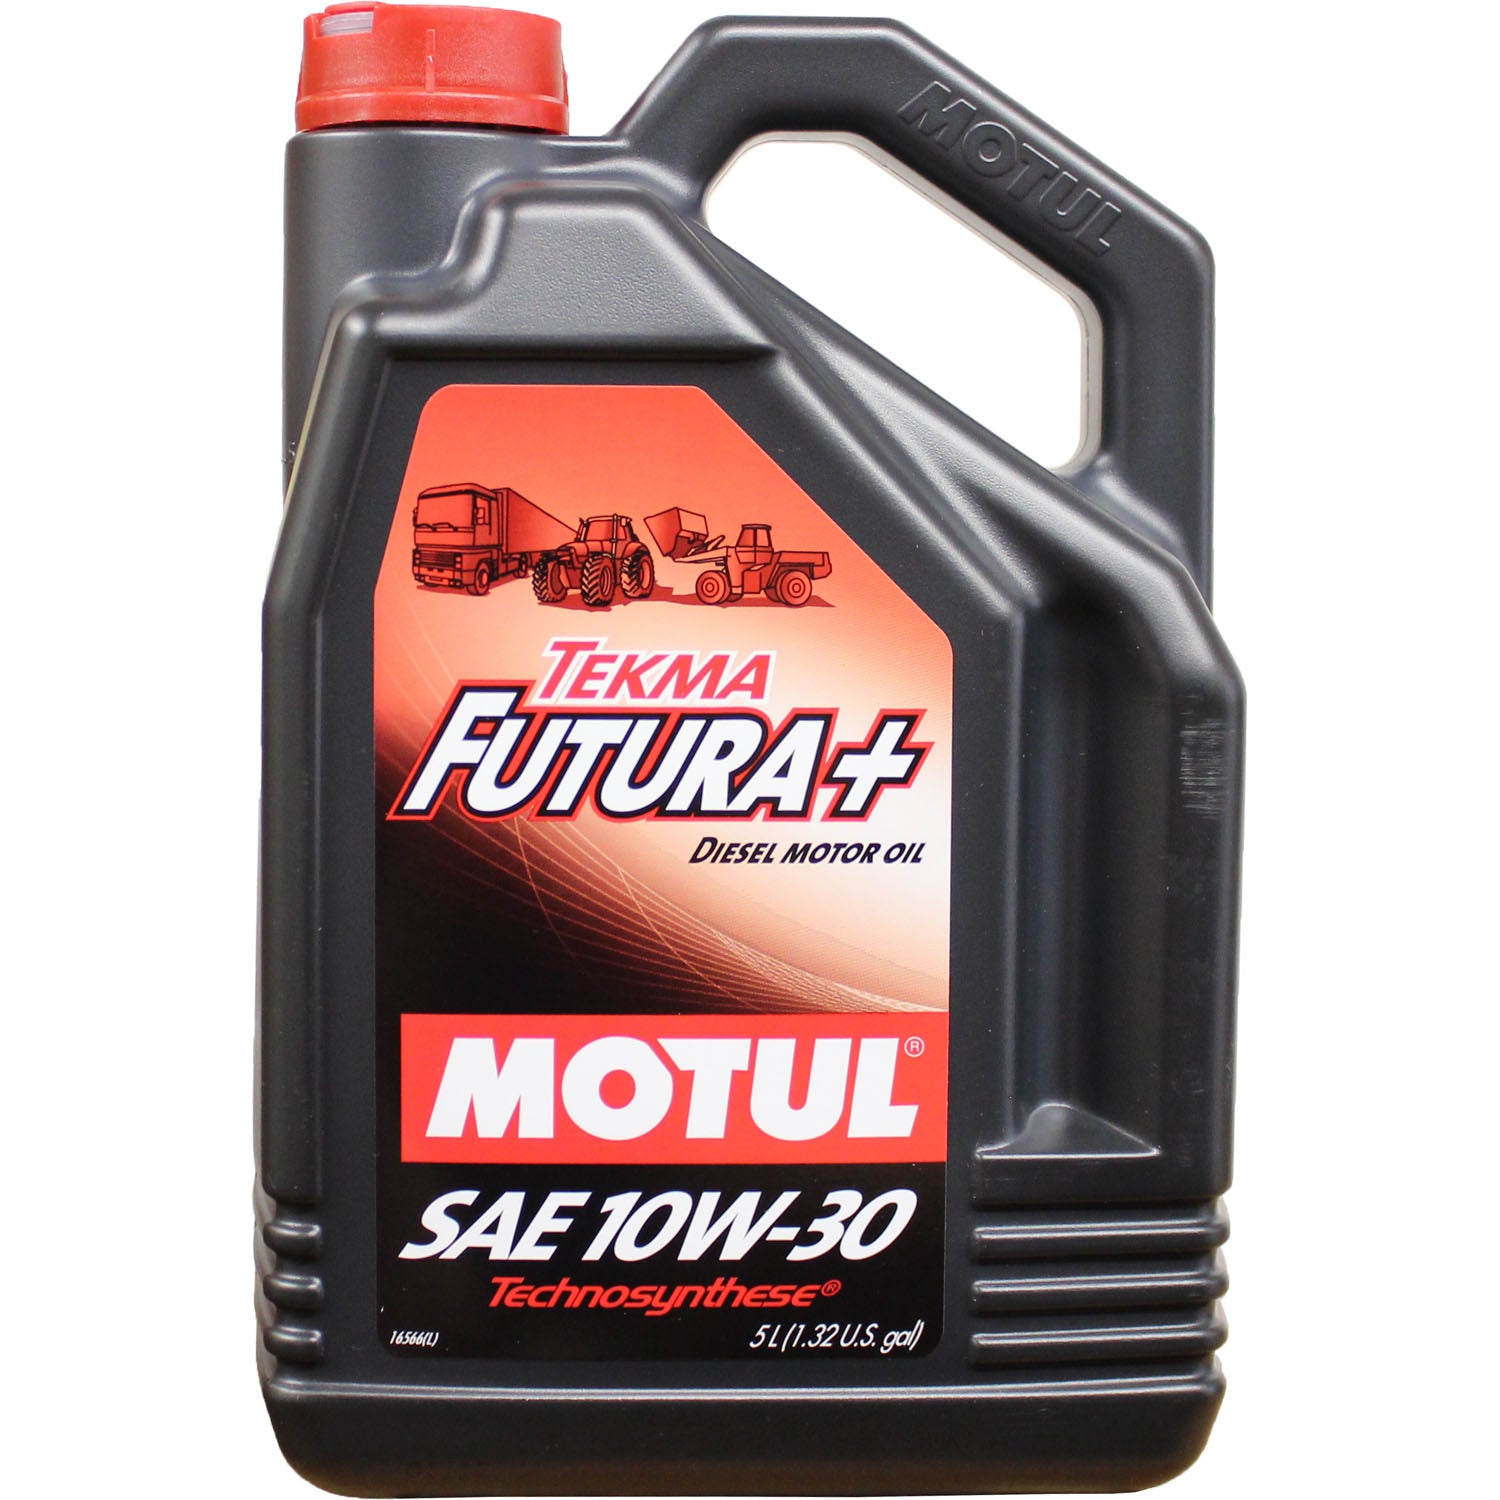 Motul Tekma Futura+ Diesel Motor Oil 10W30 - 5 Liter